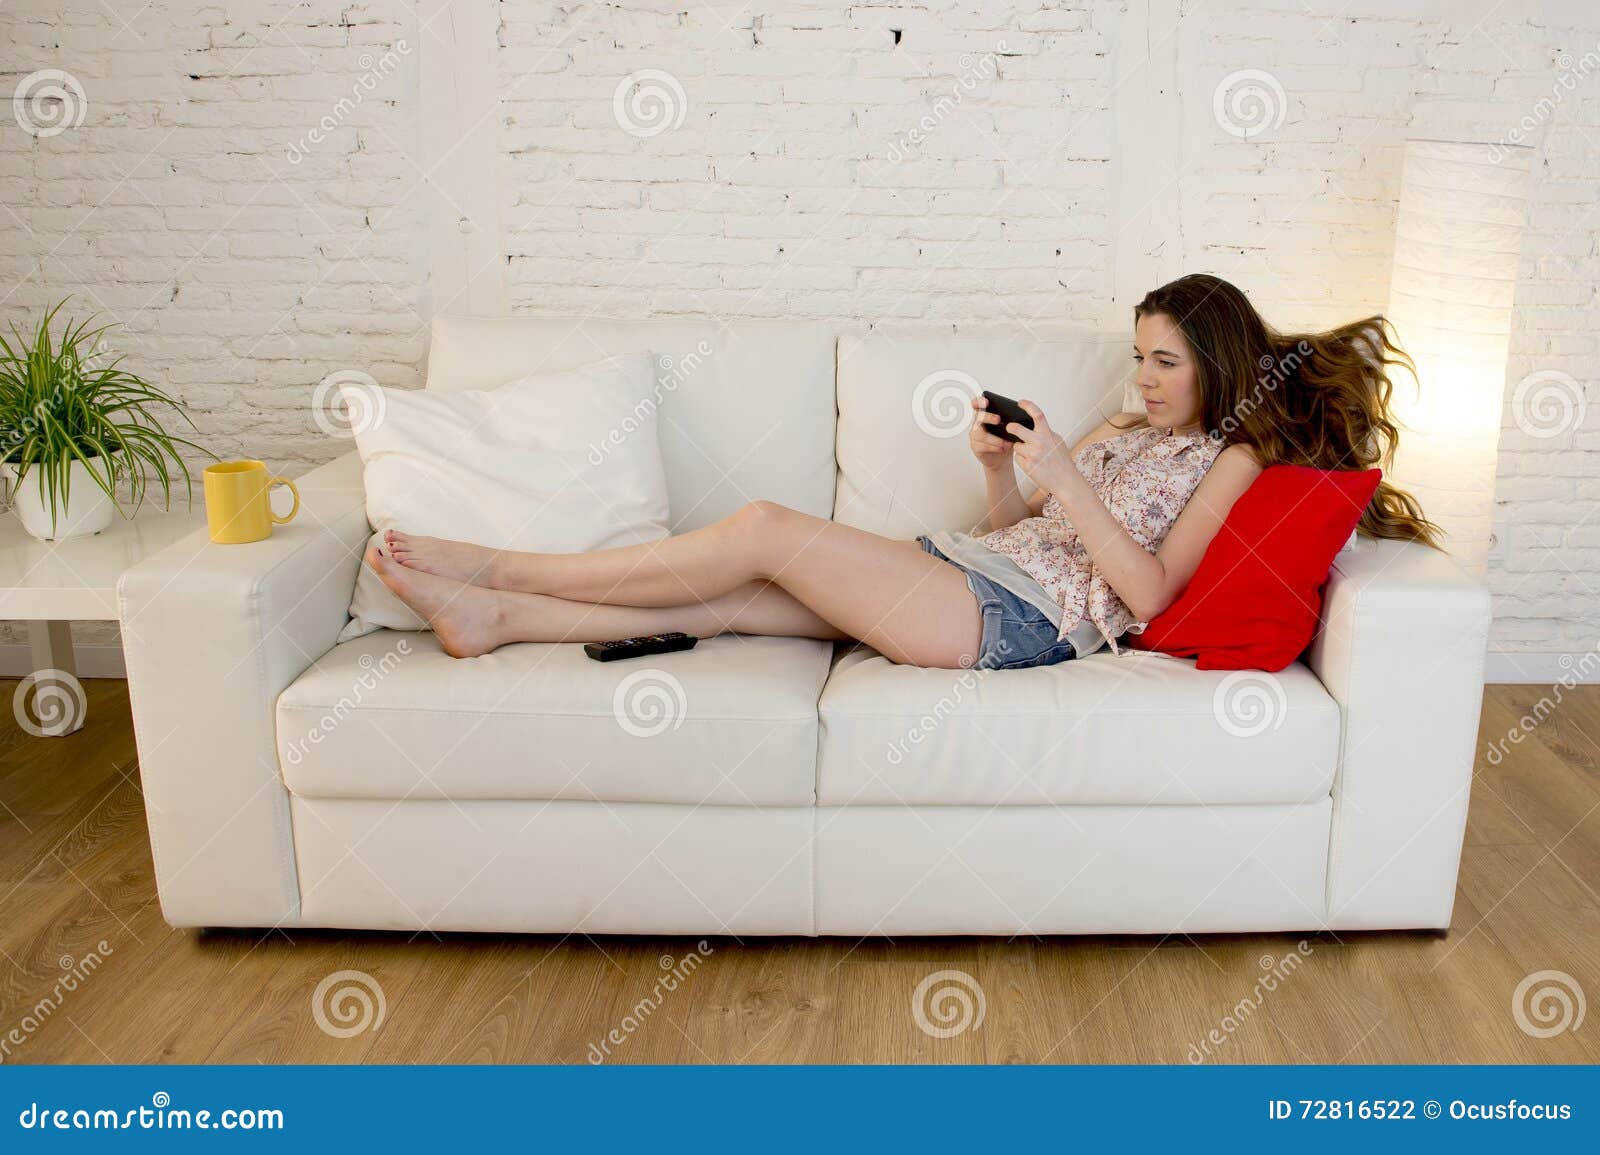 Тетке на диване. Девушка лежит на диване. Диван для девочки. Девушка босиком на диване. Девушка сидит на диване.